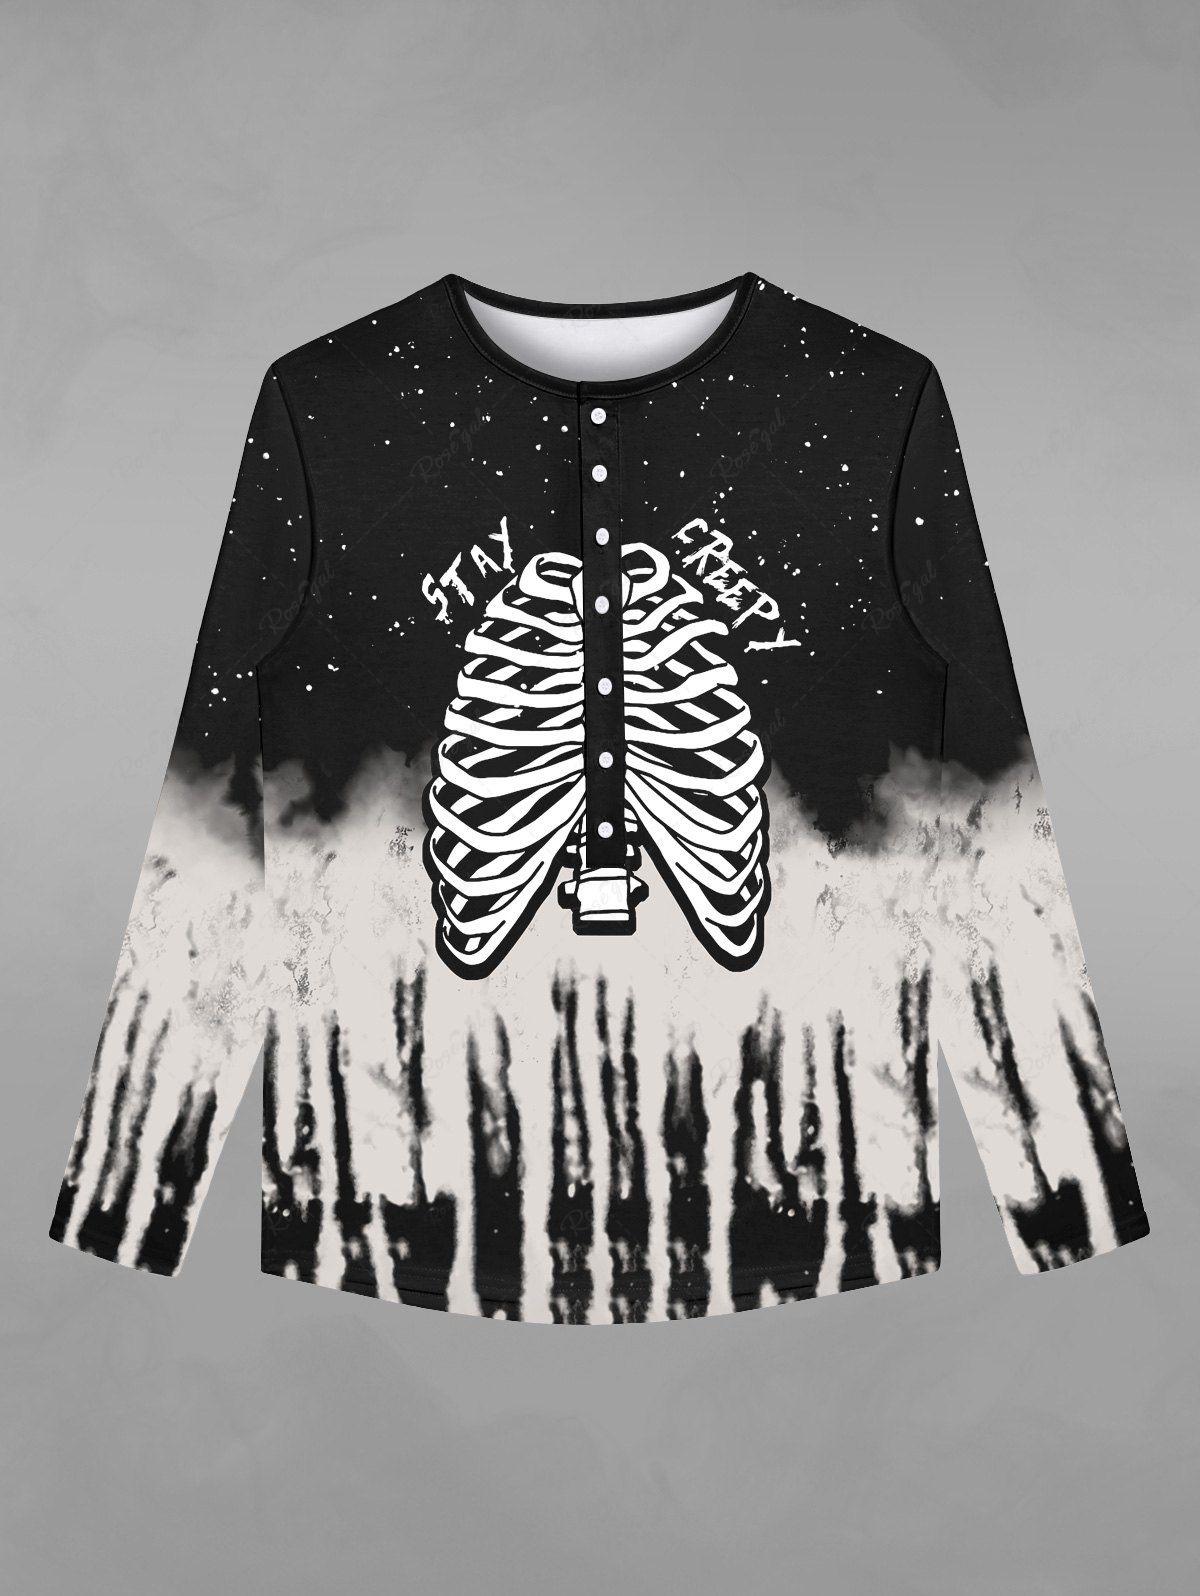 T-shirt D'Halloween Déchiré Gothique Squelette Galaxie Imprimés avec Boutons Noir L